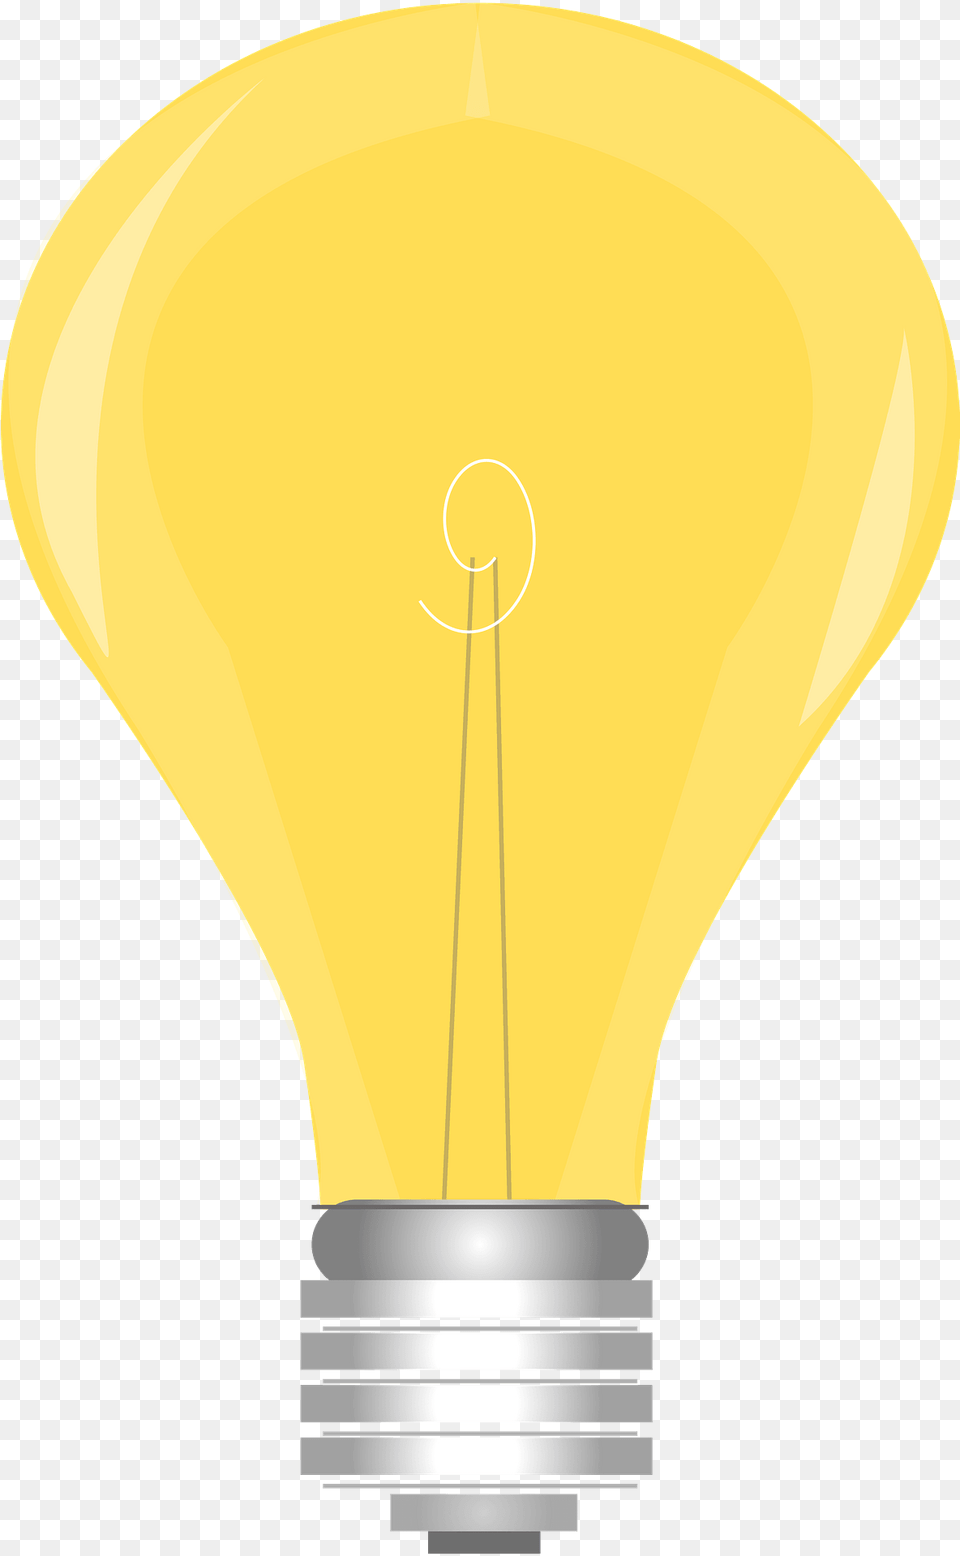 Light Bulb Light Bulb On And Off, Lightbulb, Chandelier, Lamp Png